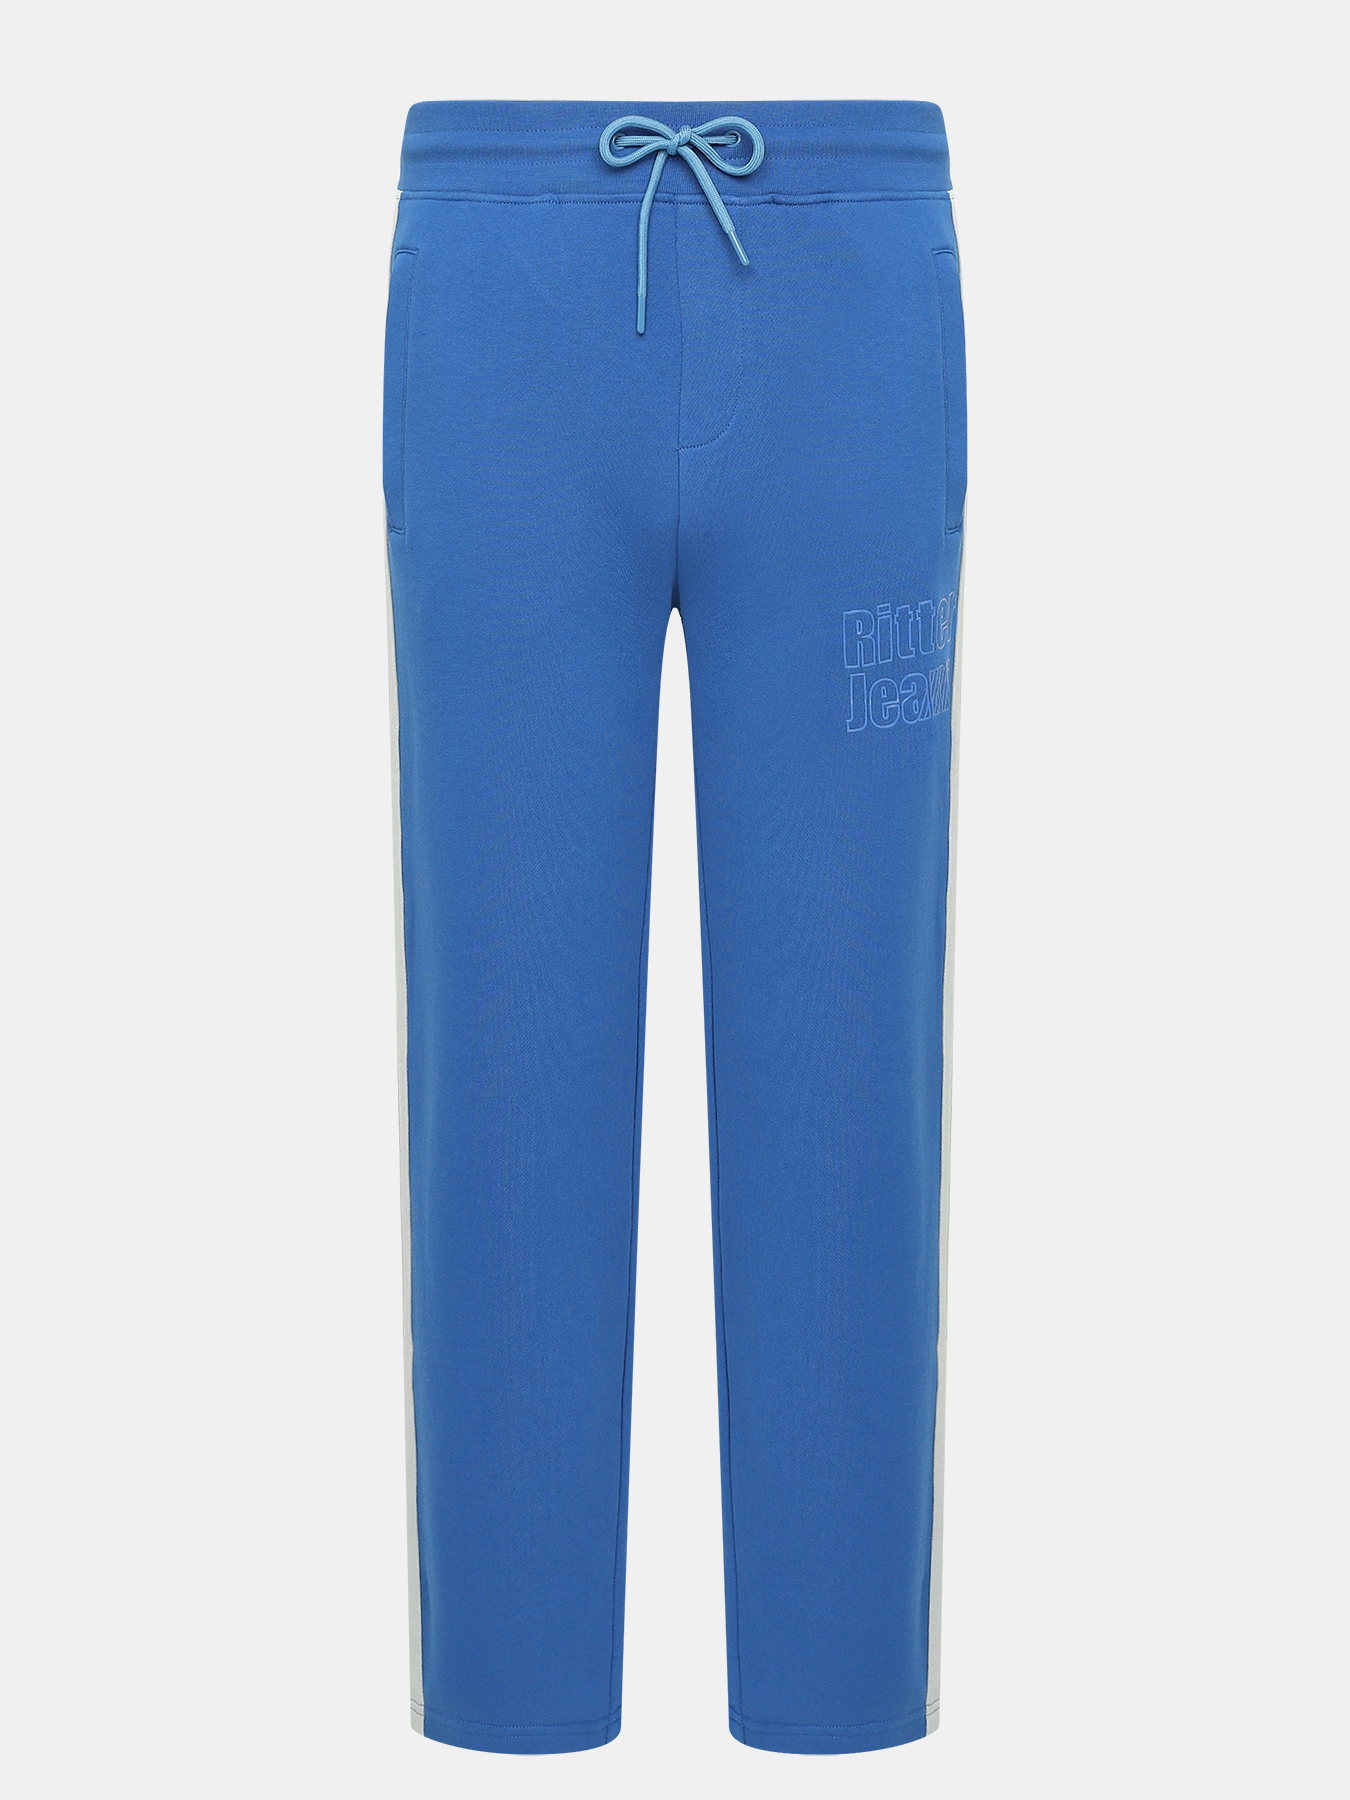 Спортивные брюки мужские Ritter jeans 437306 синие 54 RU